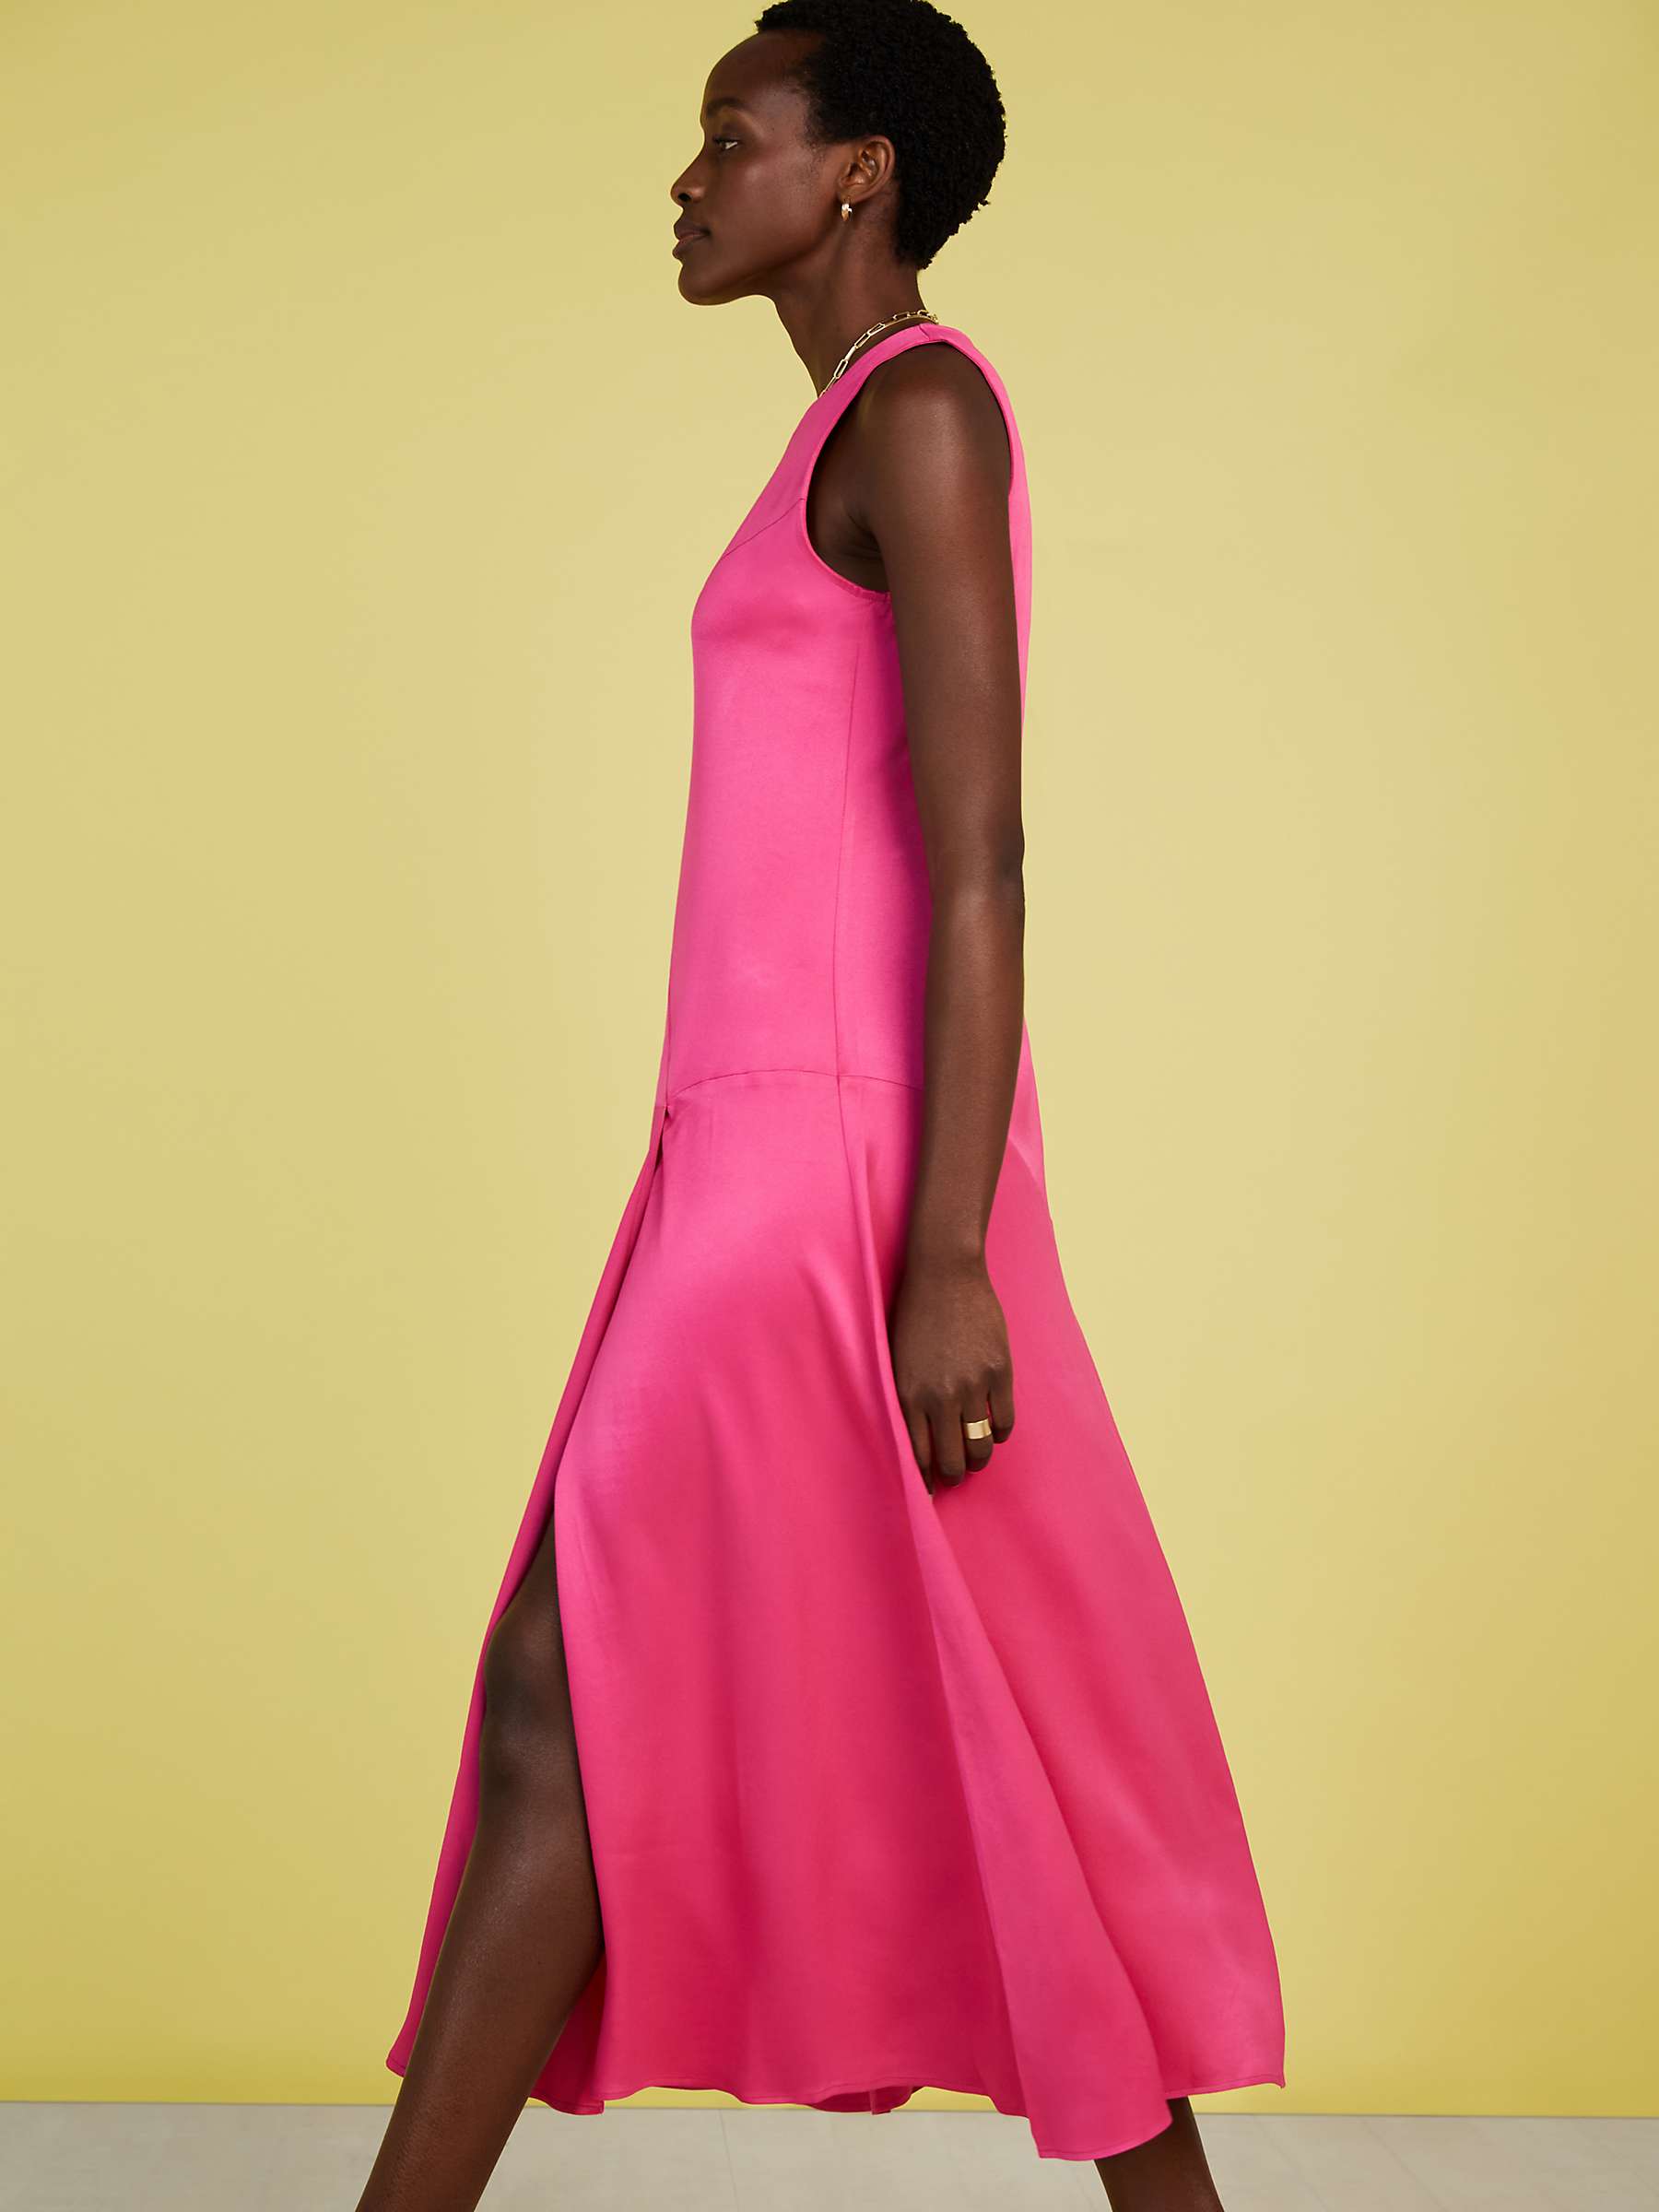 Buy Baukjen Soleil Satin Side Slit Midi Dress, Hyper Pink Online at johnlewis.com